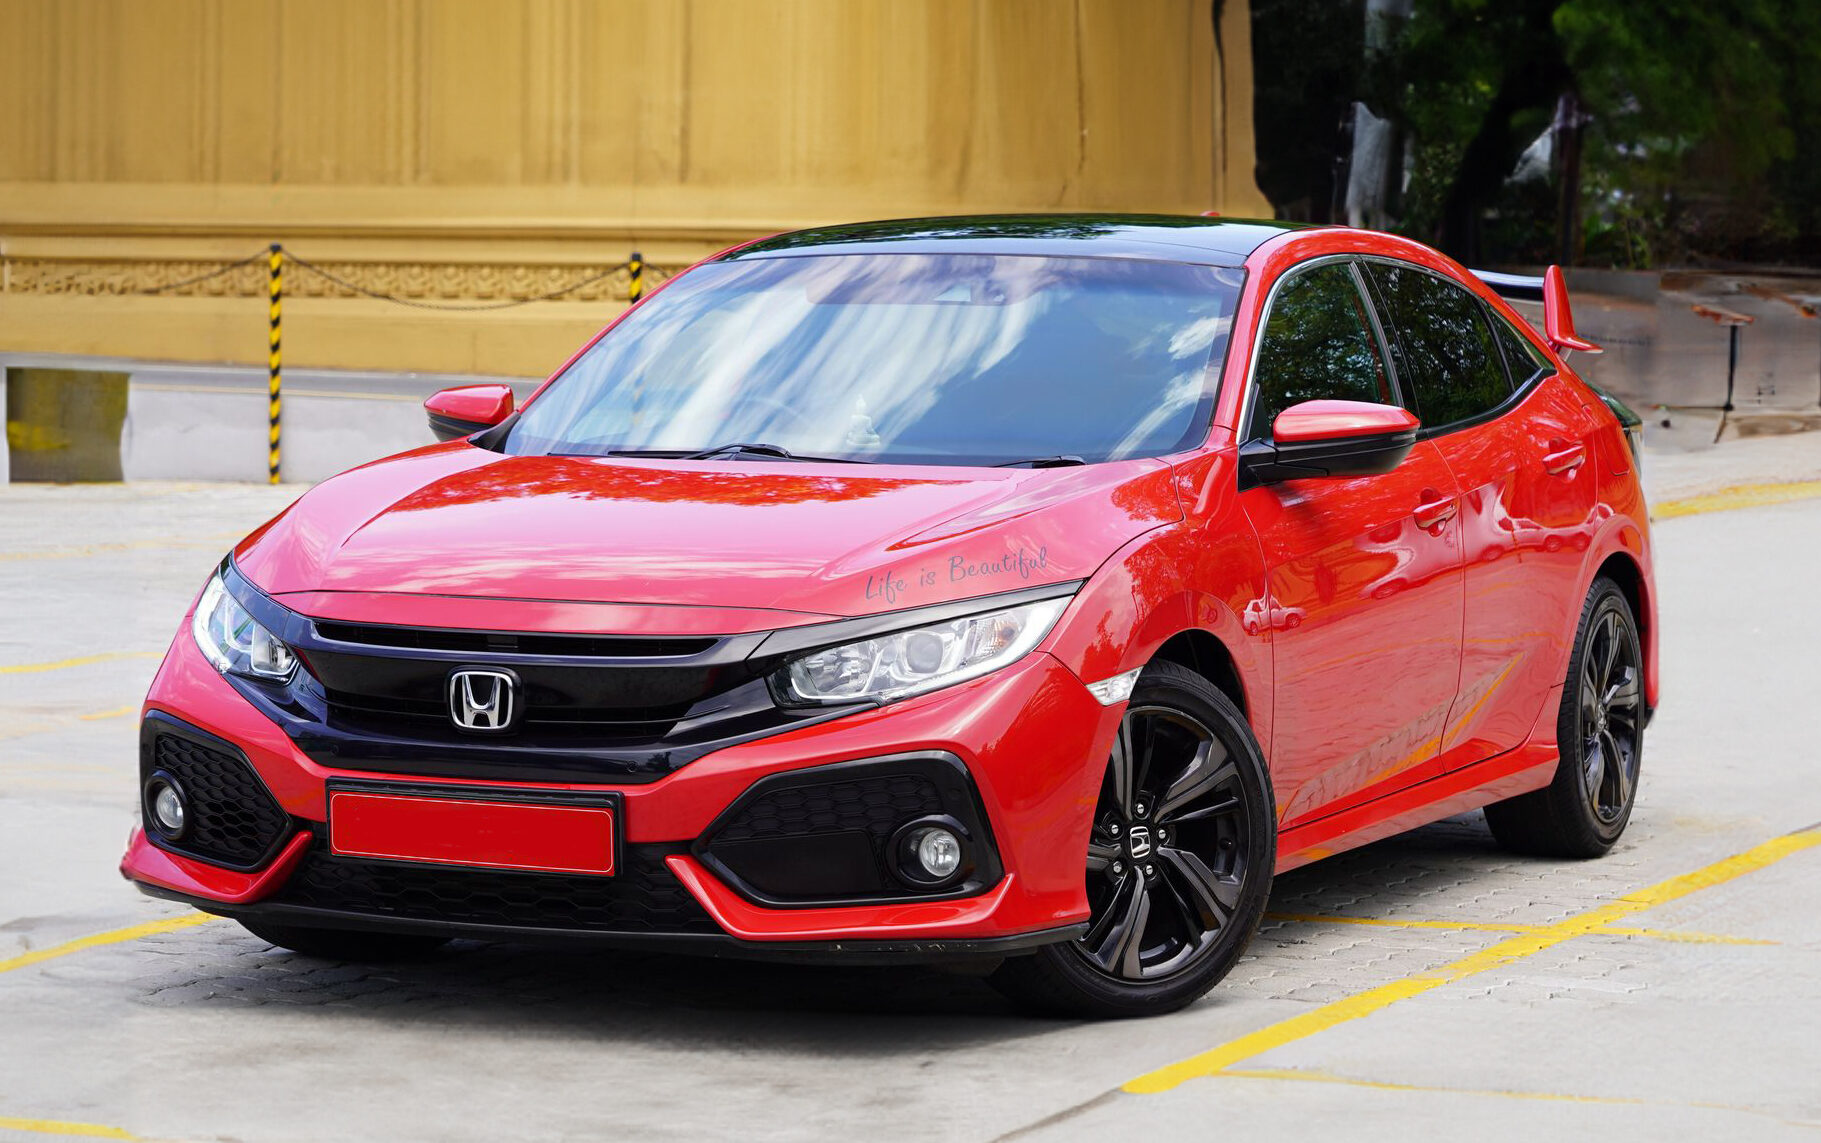 Honda Civic 2019 Review